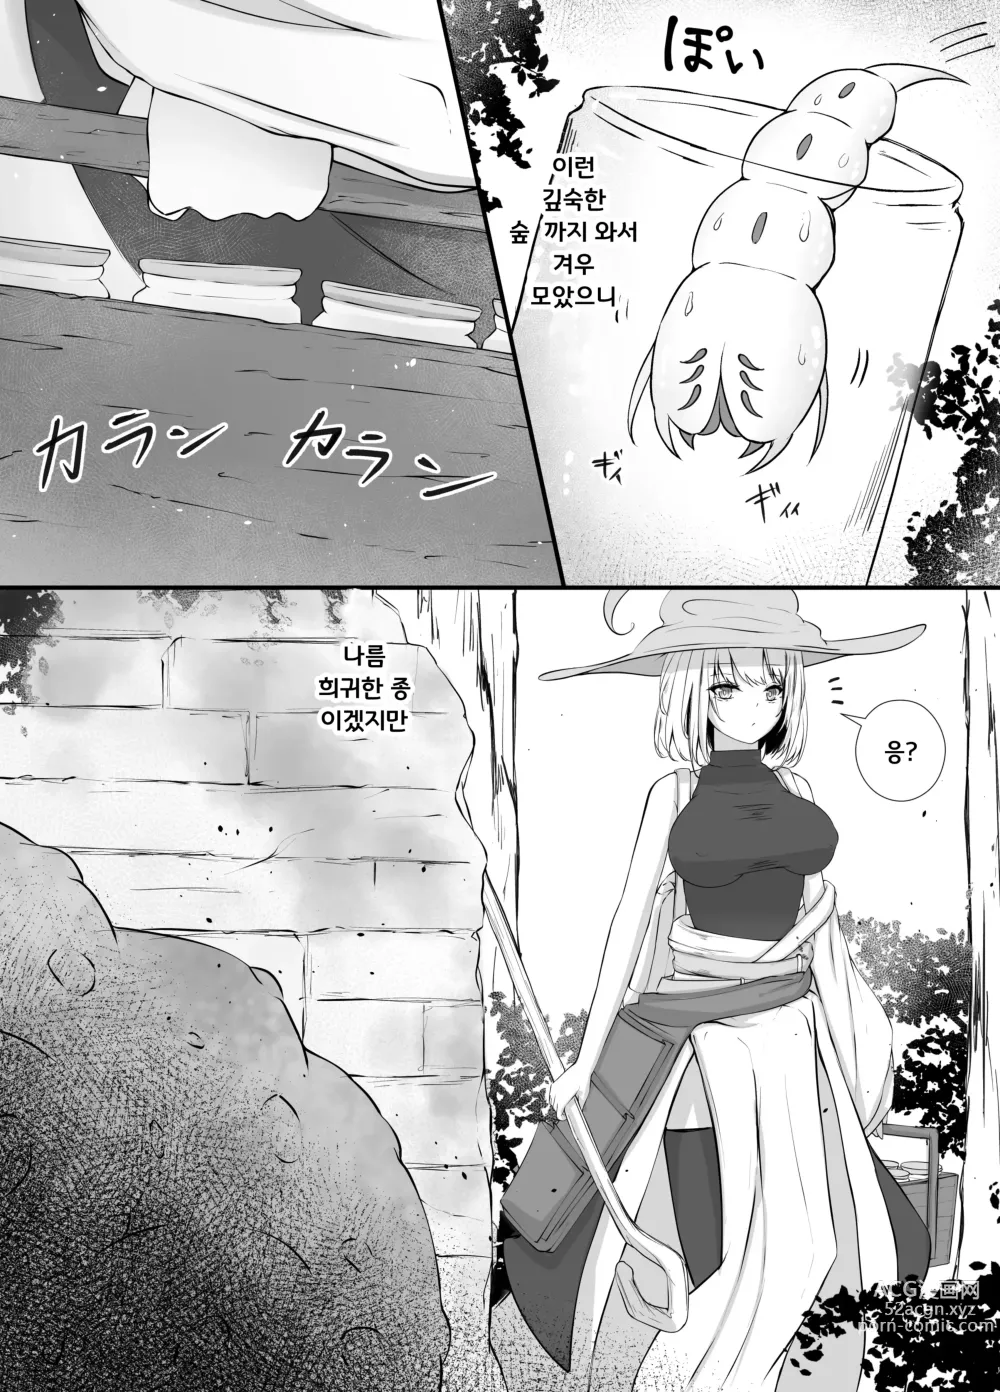 Page 5 of doujinshi 여마법사의 충간이야기